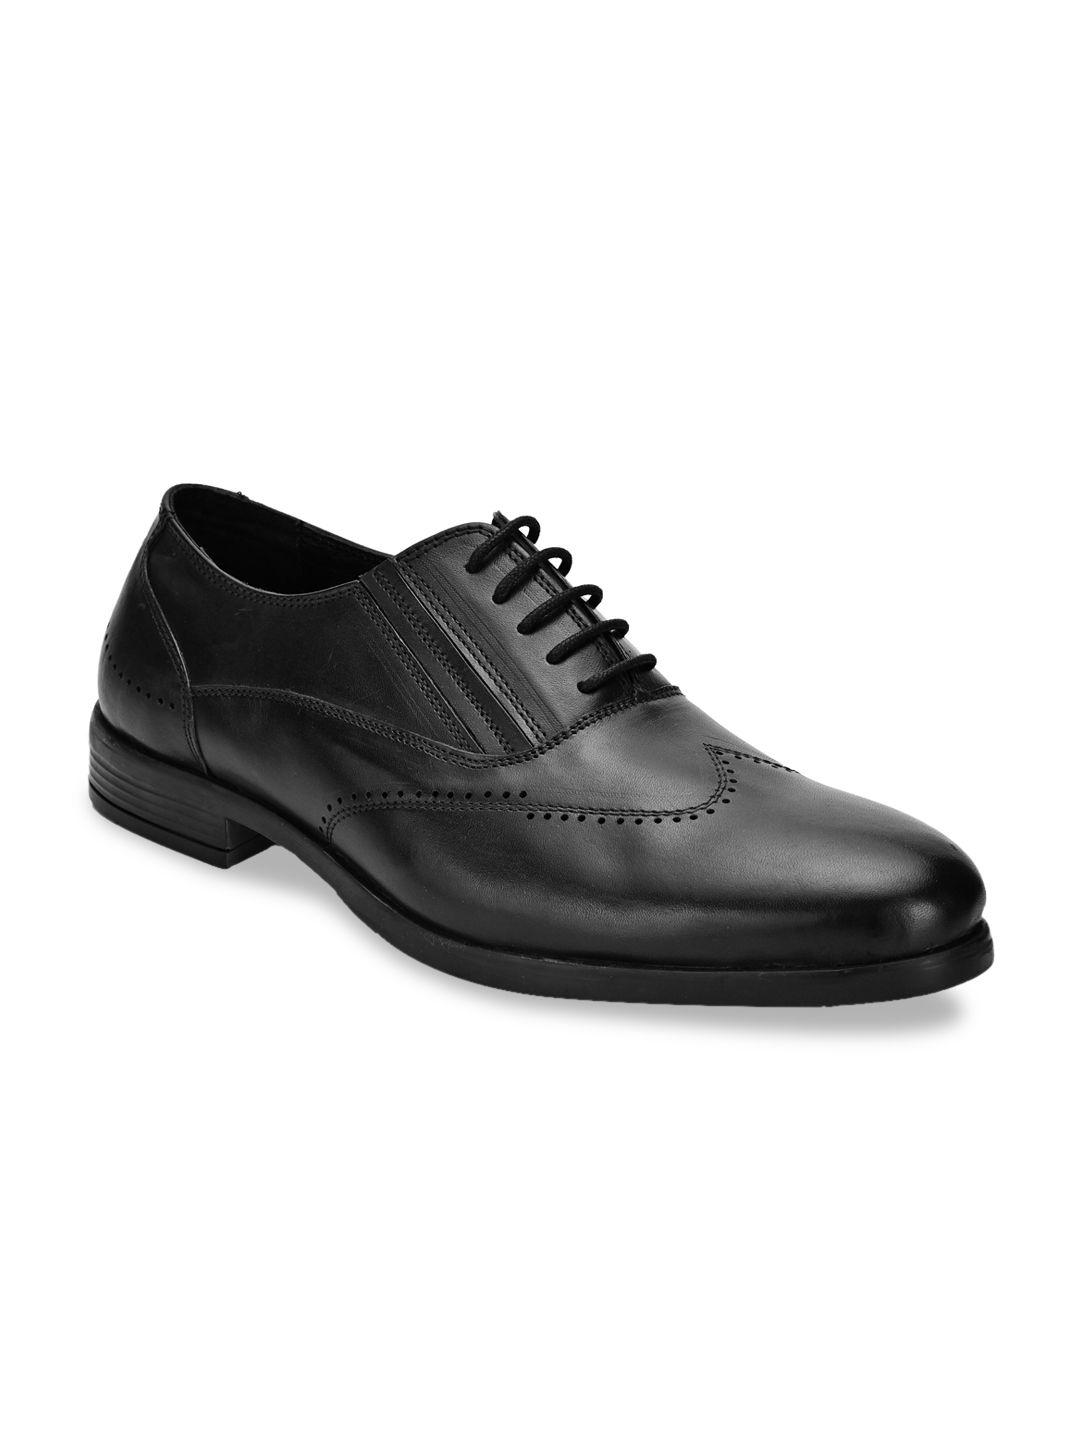 san-frissco-men-black-solid-genuine-leather-formal-brogues